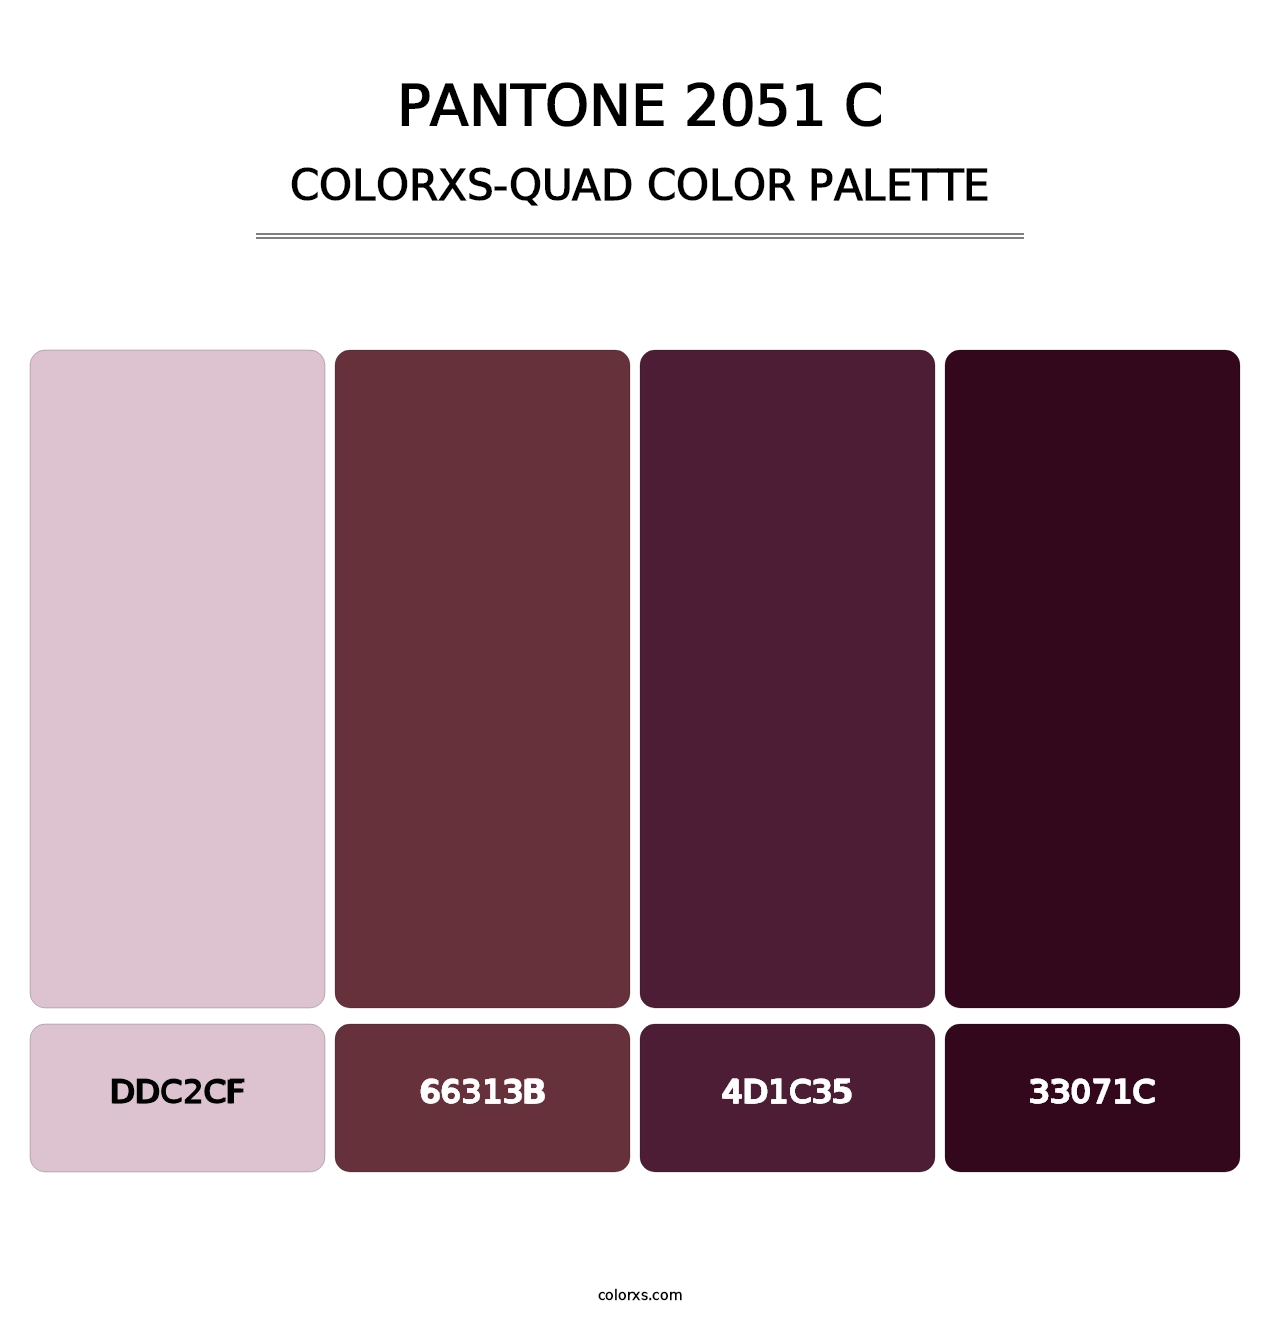 PANTONE 2051 C - Colorxs Quad Palette